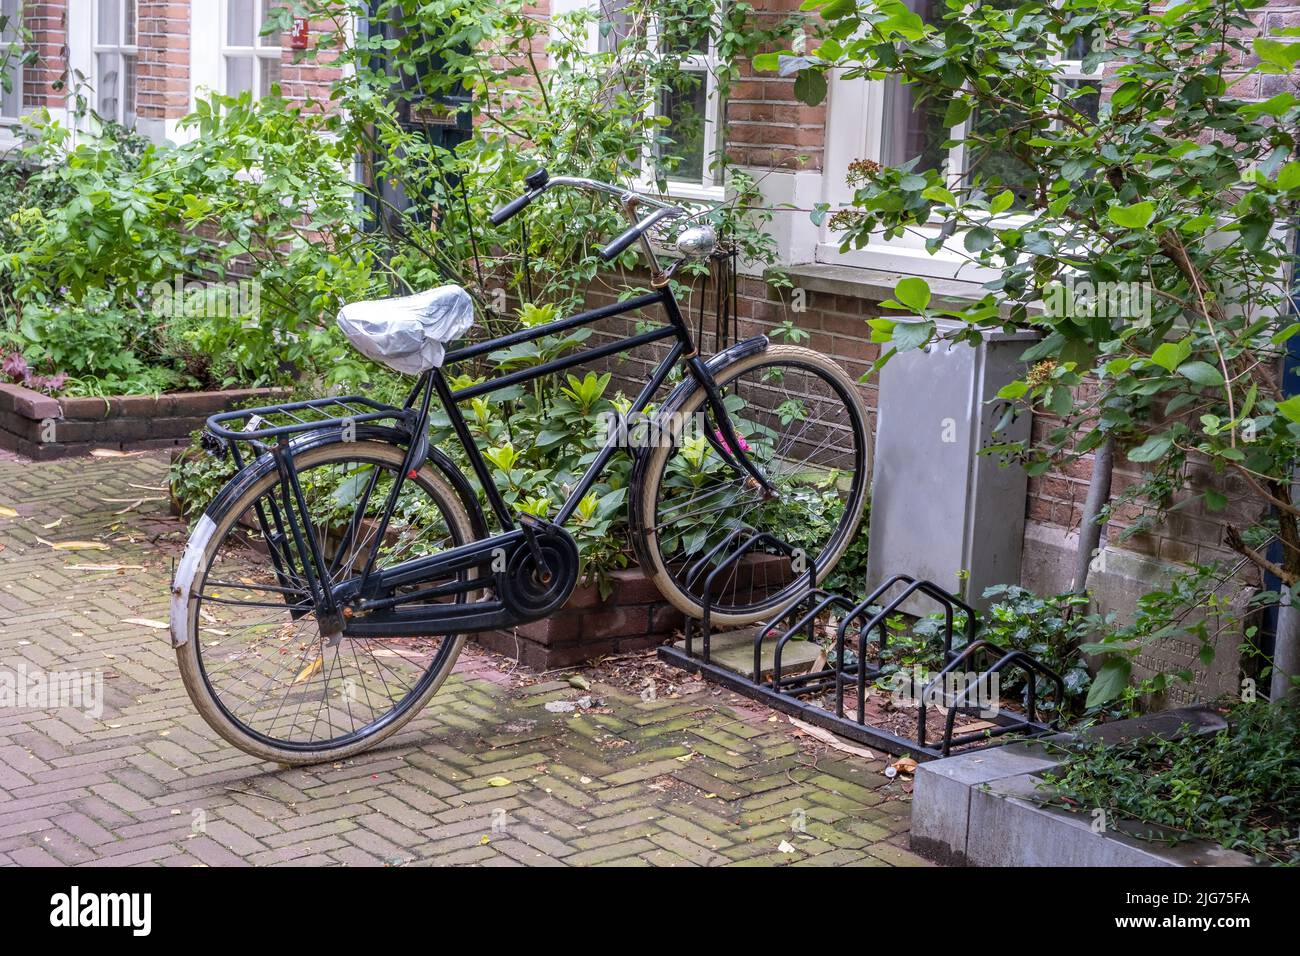 Βιcycle parked in front of a building, Amsterdam city neighborhood. Traditional red brick wall house, paved alley. Holland Netherlands Stock Photo